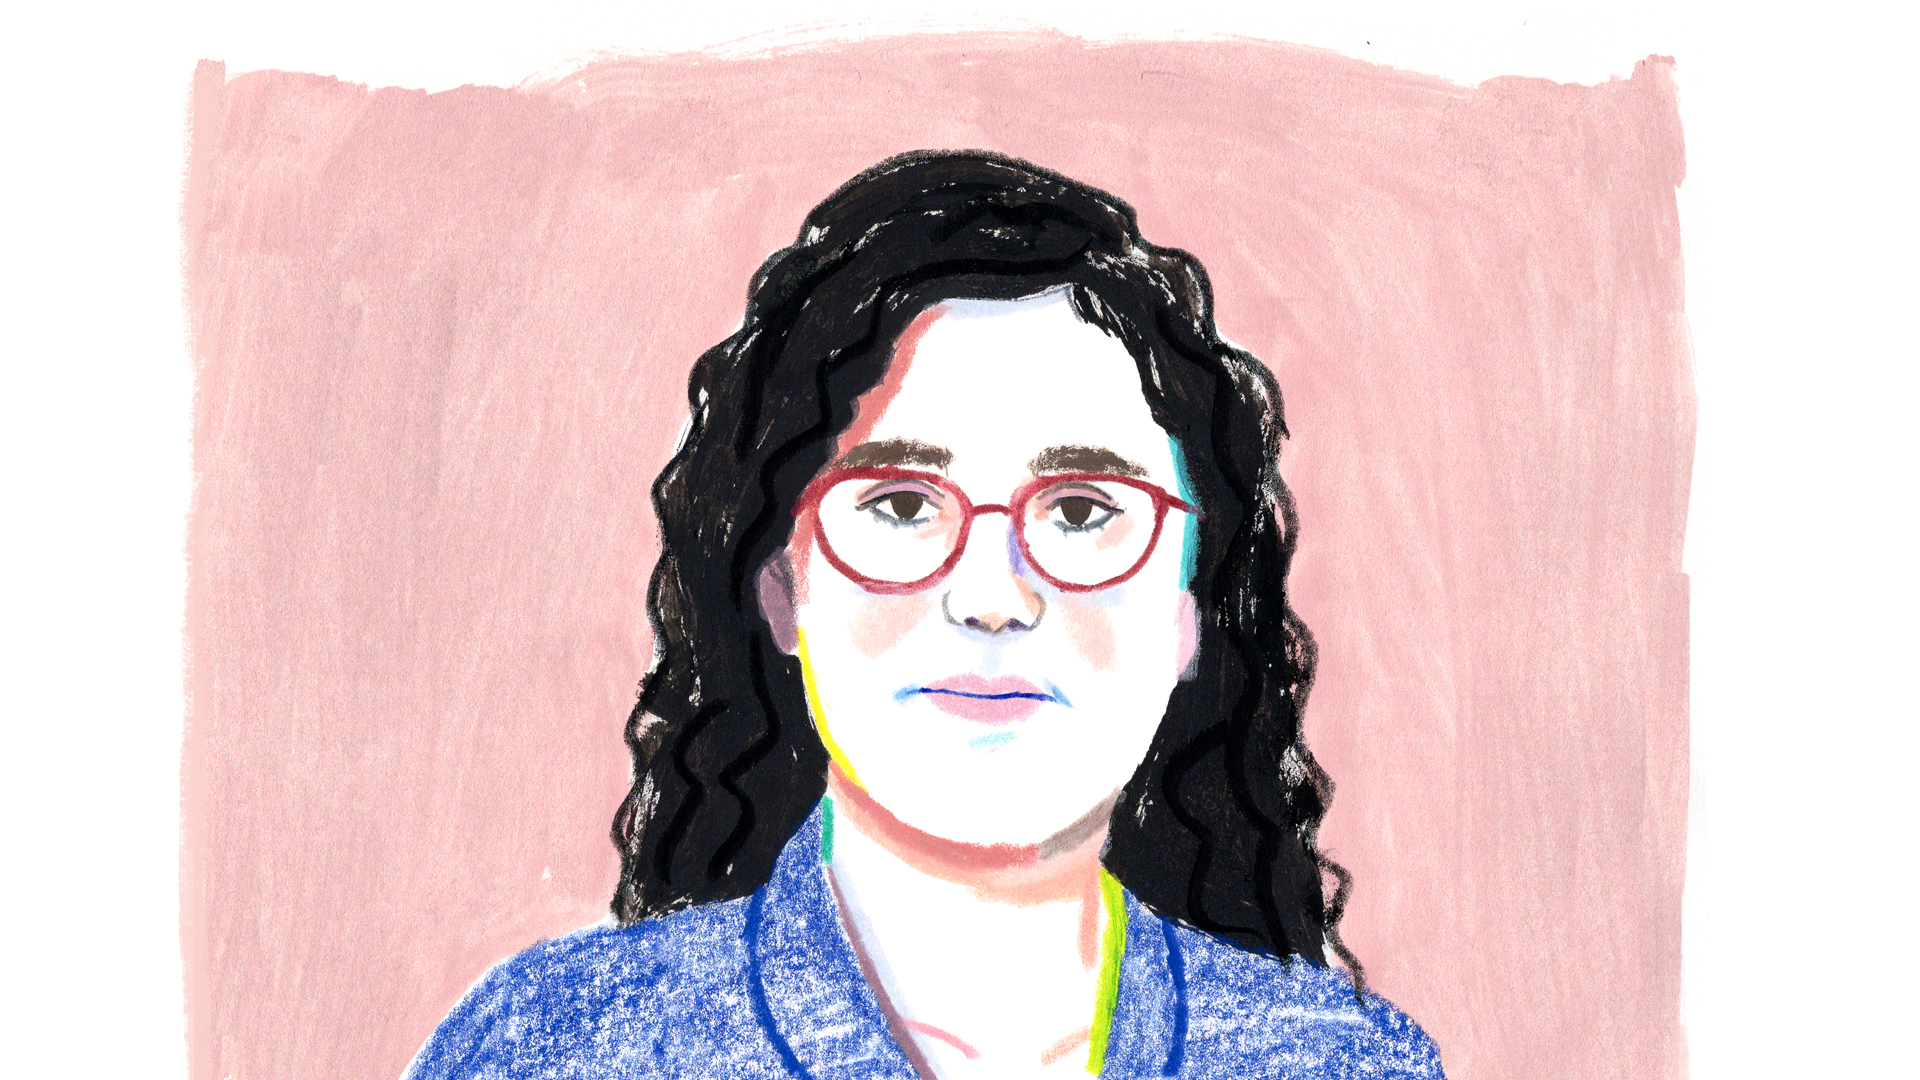 A portrait illustration of Leah Boustan.